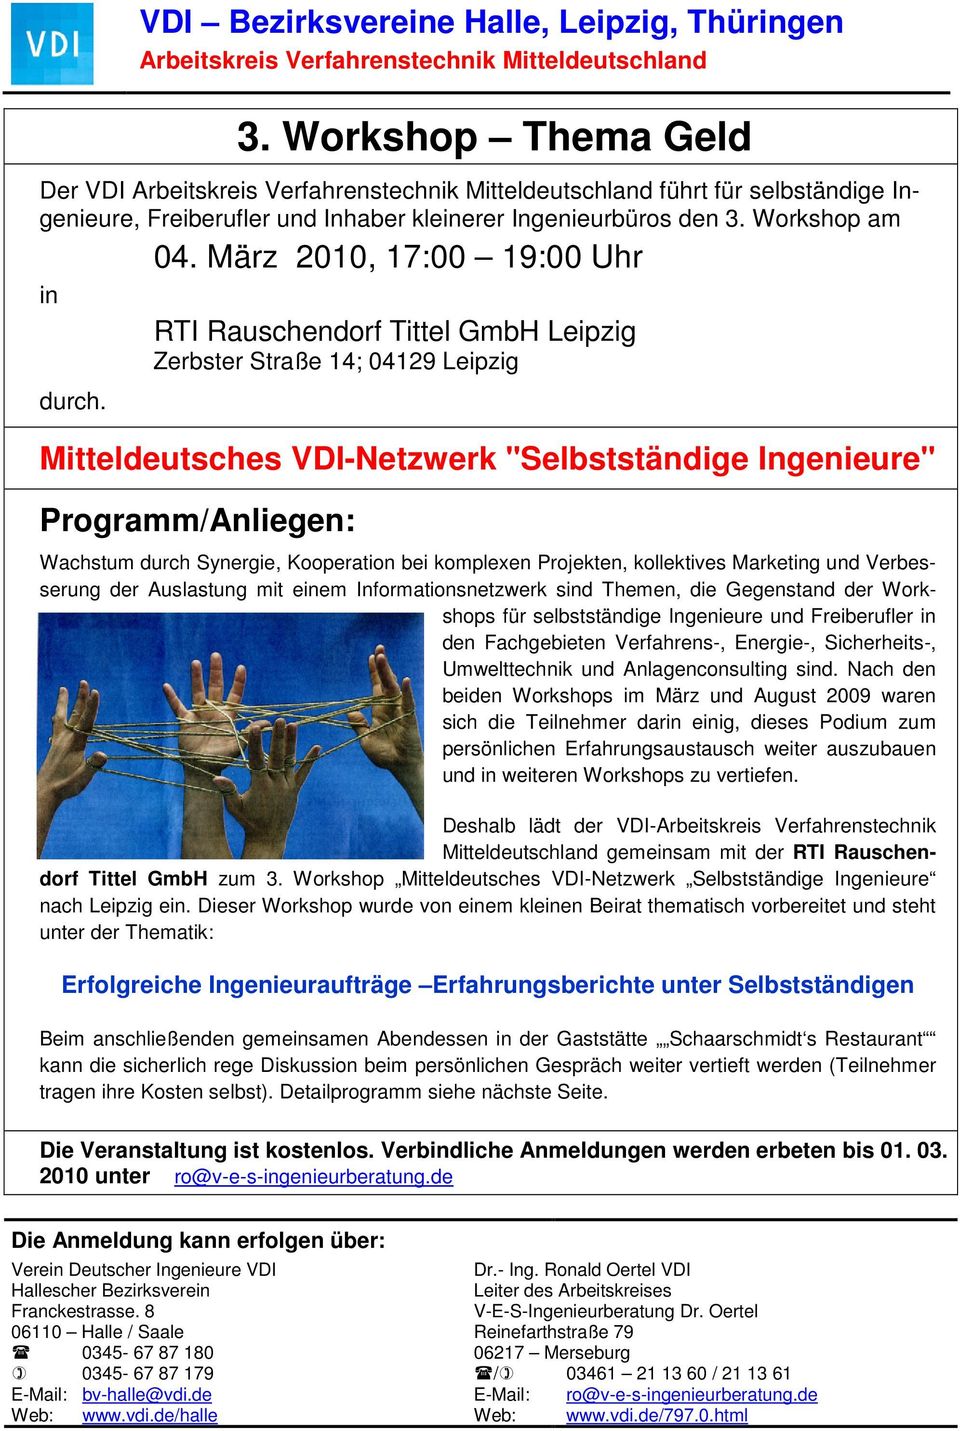 Mitteldeutsches VDI-Netzwerk "Selbstständige Ingenieure" Programm/Anliegen: Wachstum durch Synergie, Kooperation bei komplexen Projekten, kollektives Marketing und Verbesserung der Auslastung mit